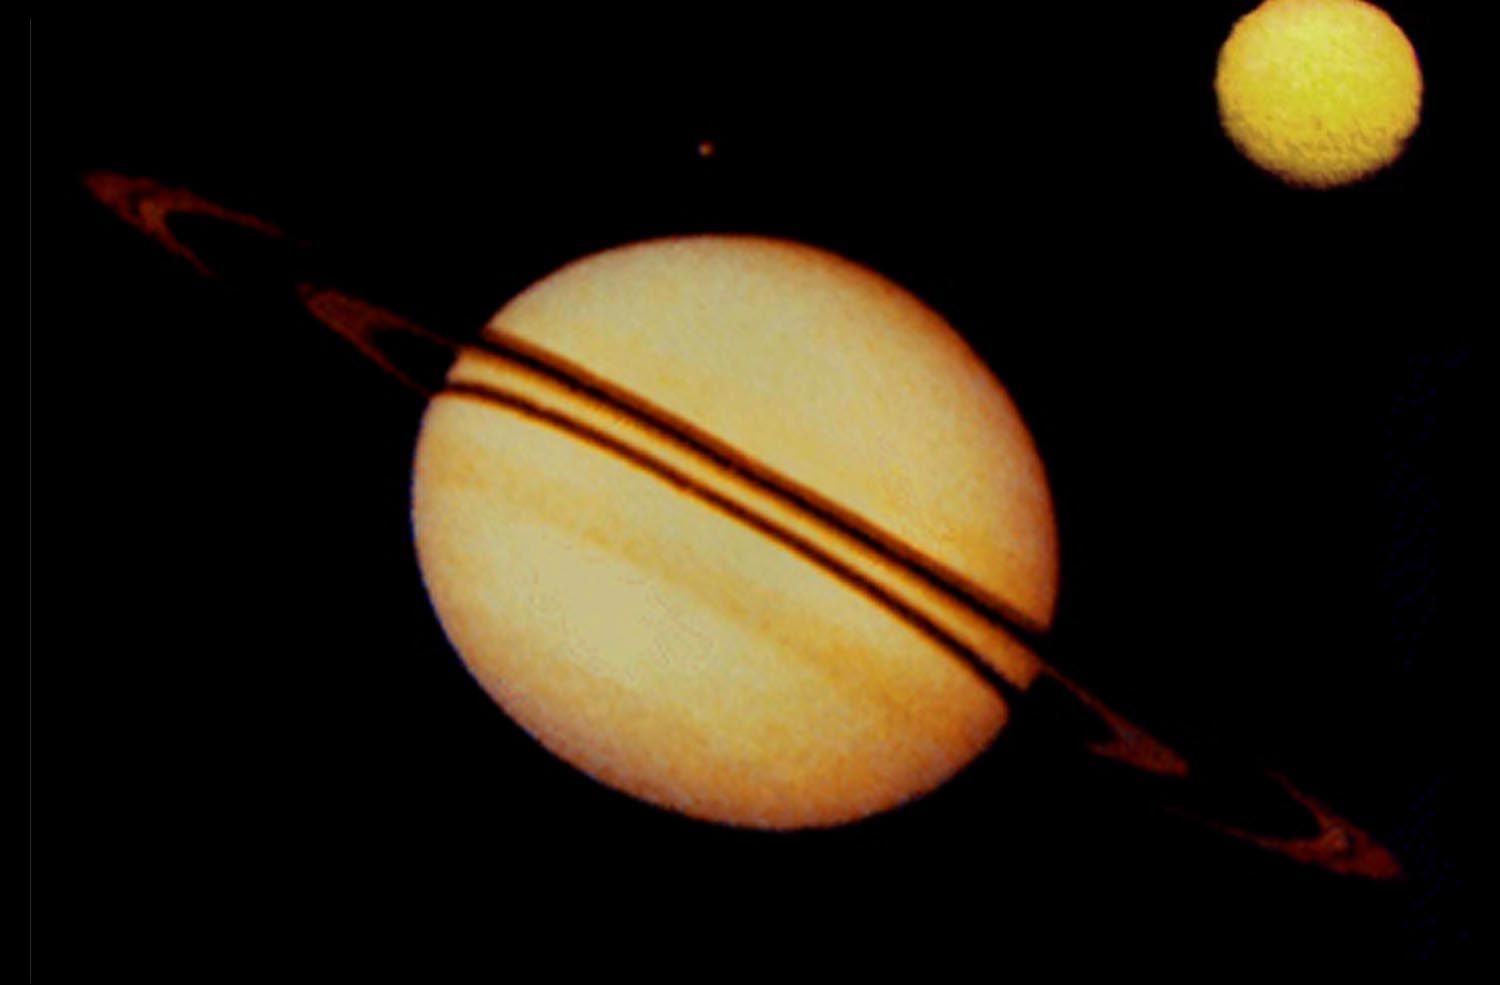 Сатурн, заснет от "Пионер 11"